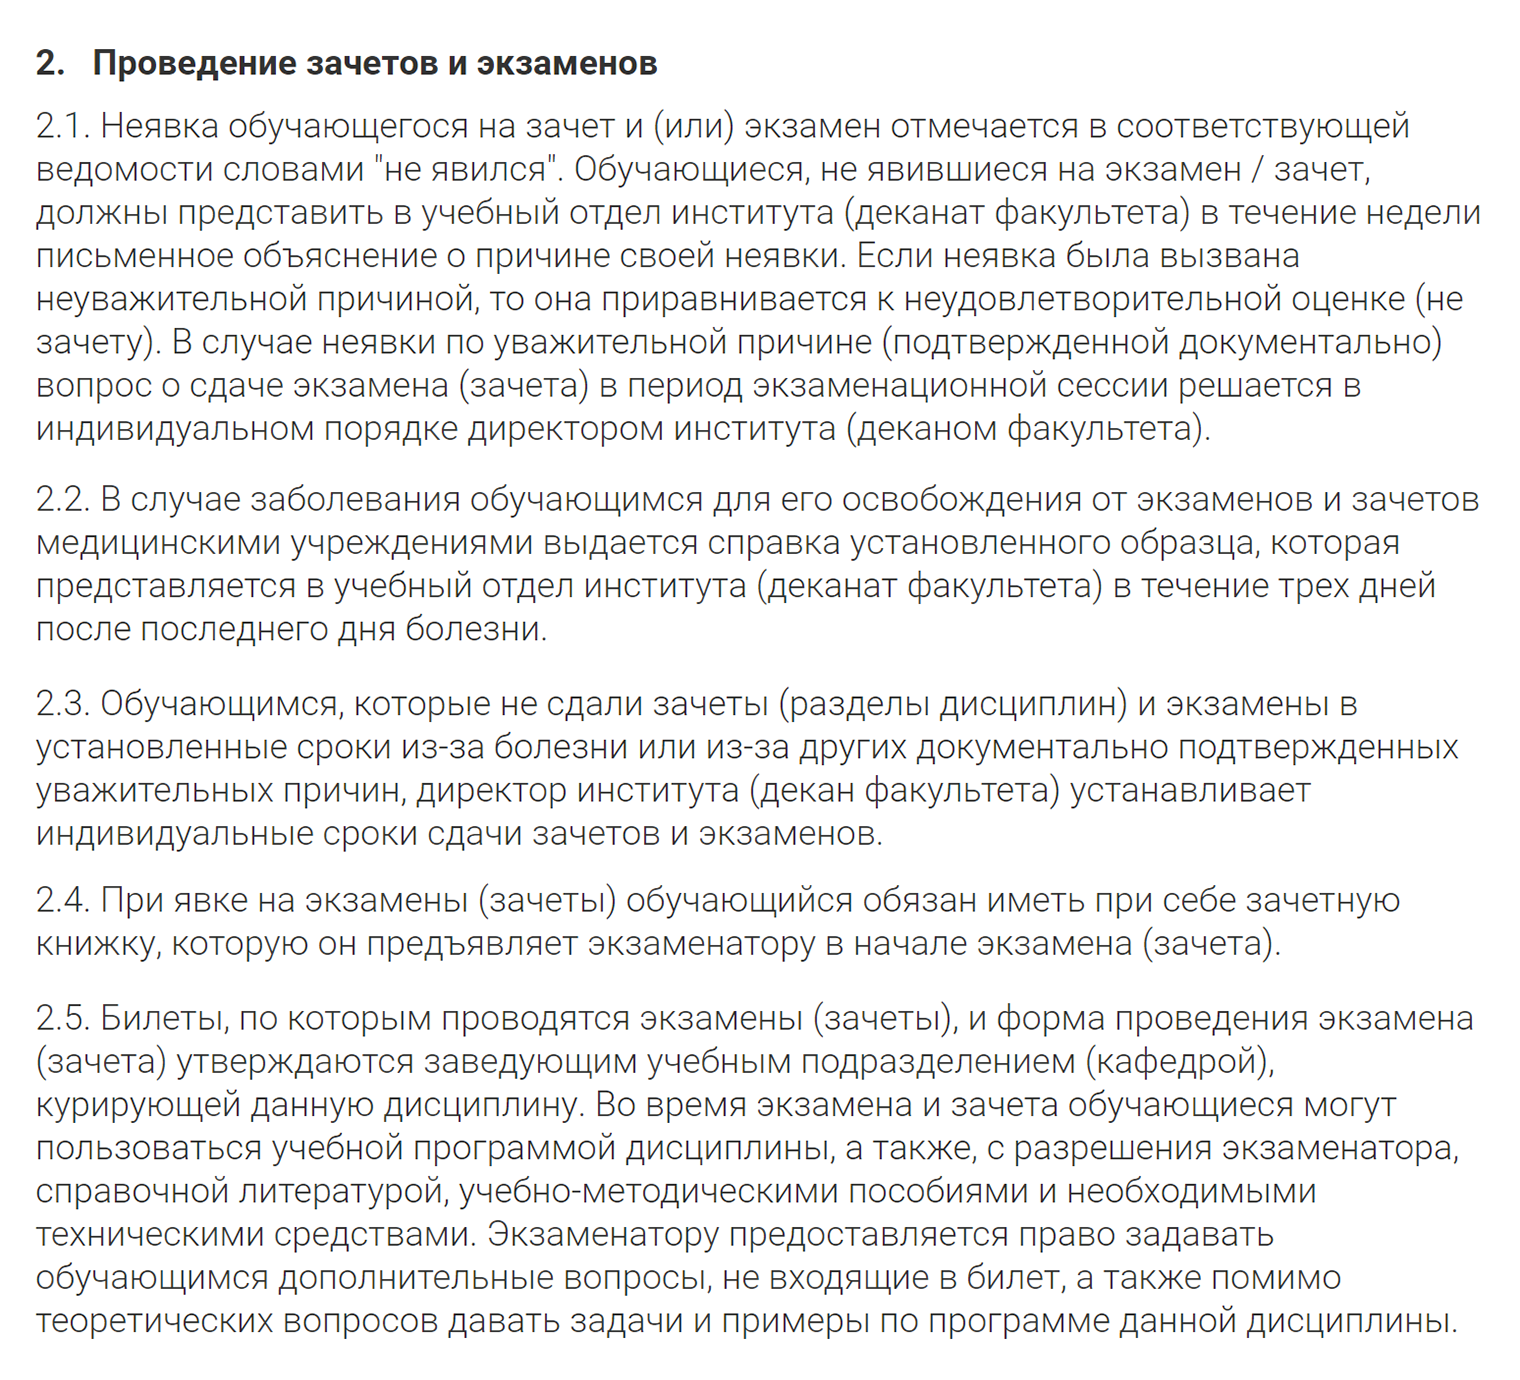 МИФИ принимает медицинские справки, но готов рассмотреть и другие уважительные причины, подтвержденные документами. Источник: mephi.ru